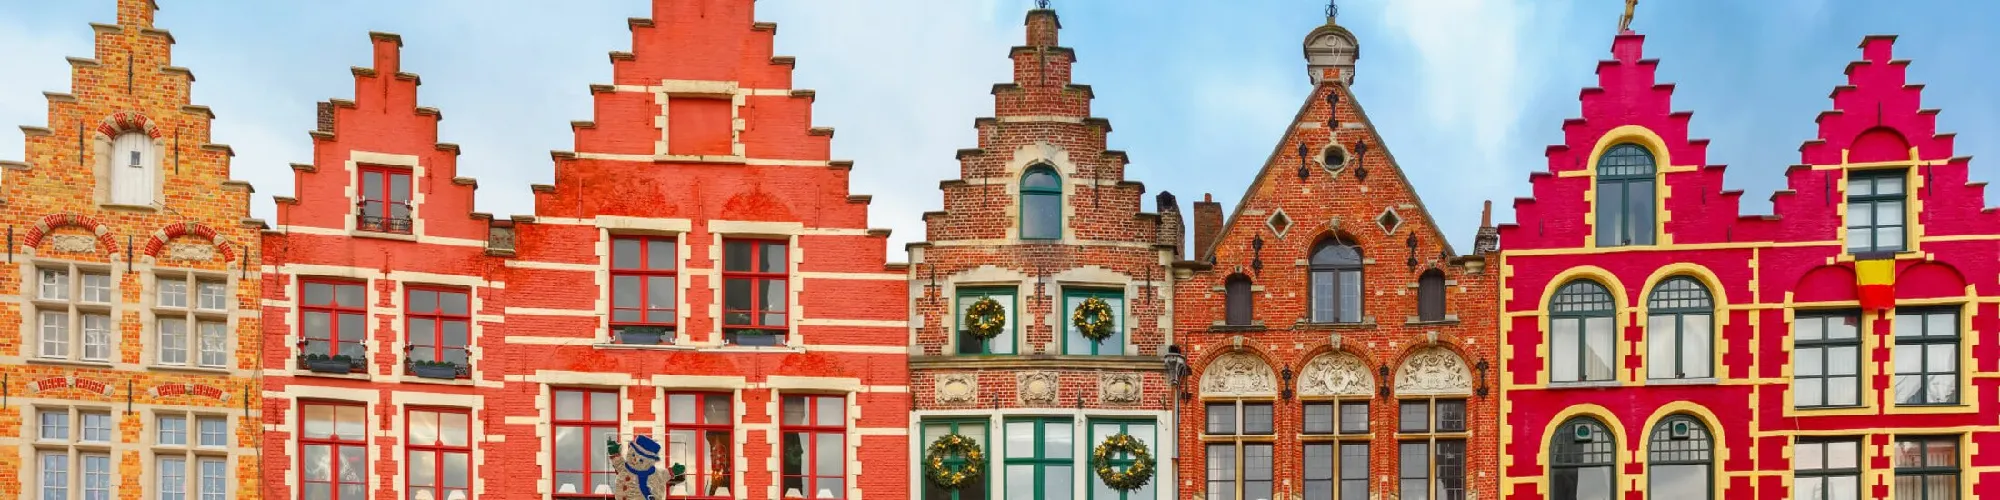 Hotels in Belgien background image